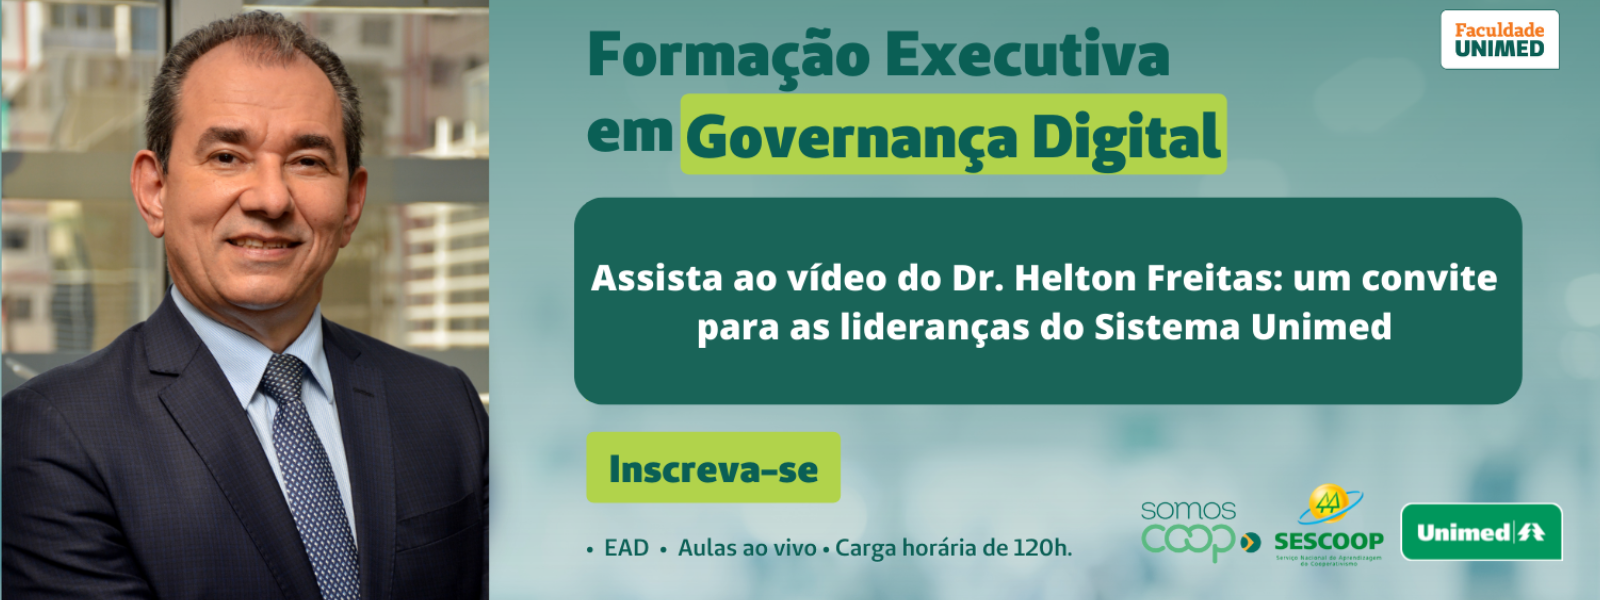 Vídeo Formação Executiva em Governança Digital